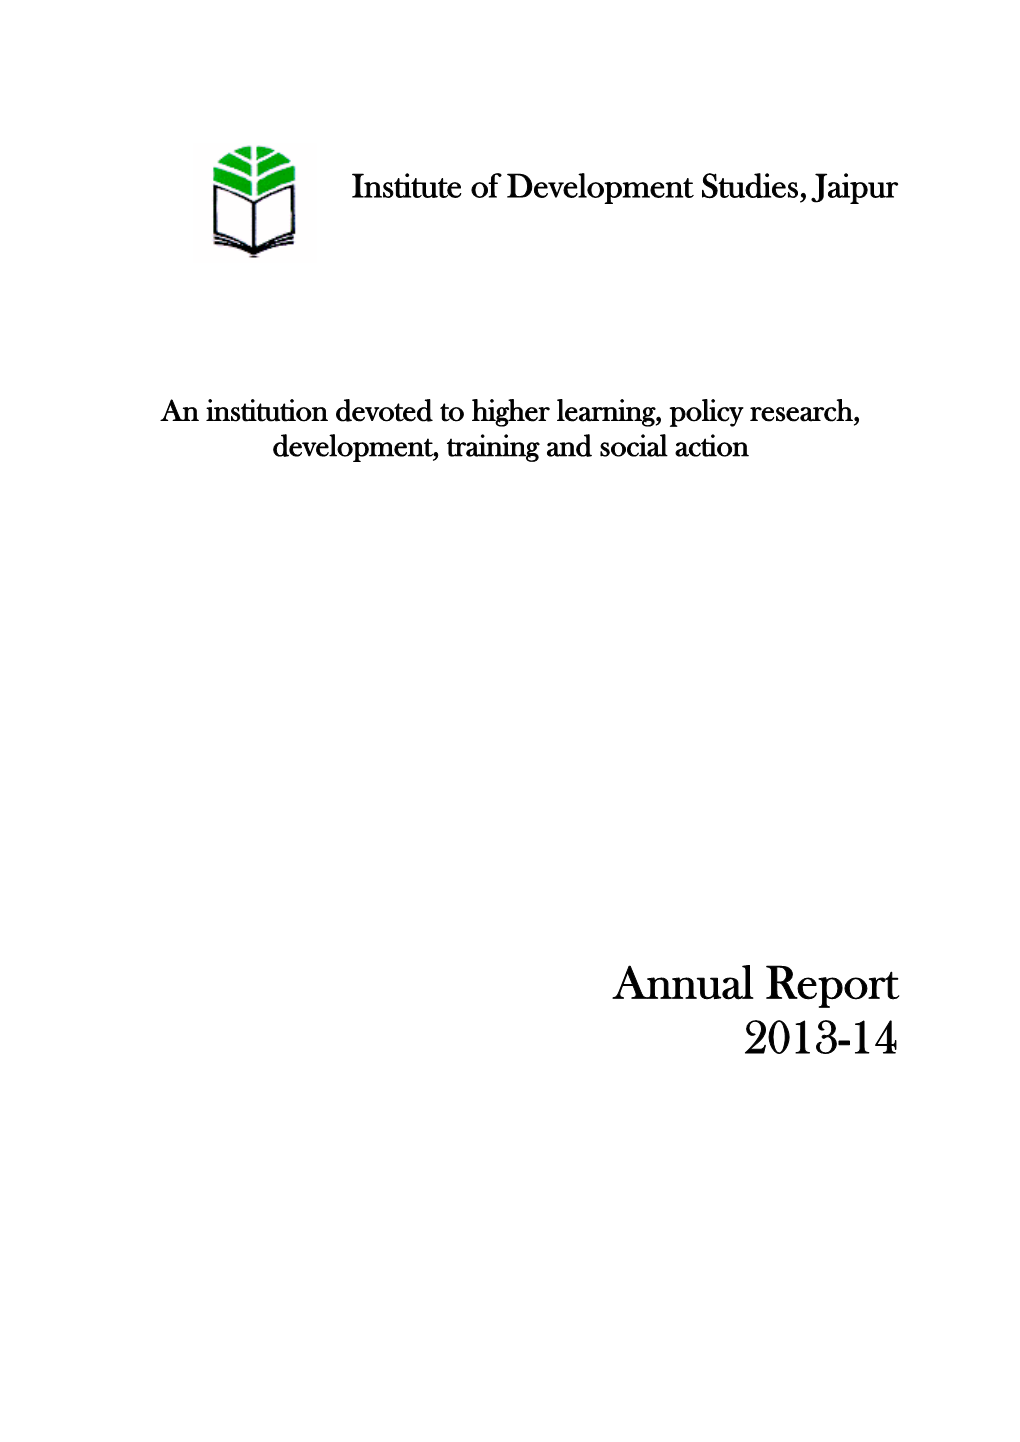 Annual Report 2013-14 Institute of Development Studies, Jaipur Annual Report, 2013‐14